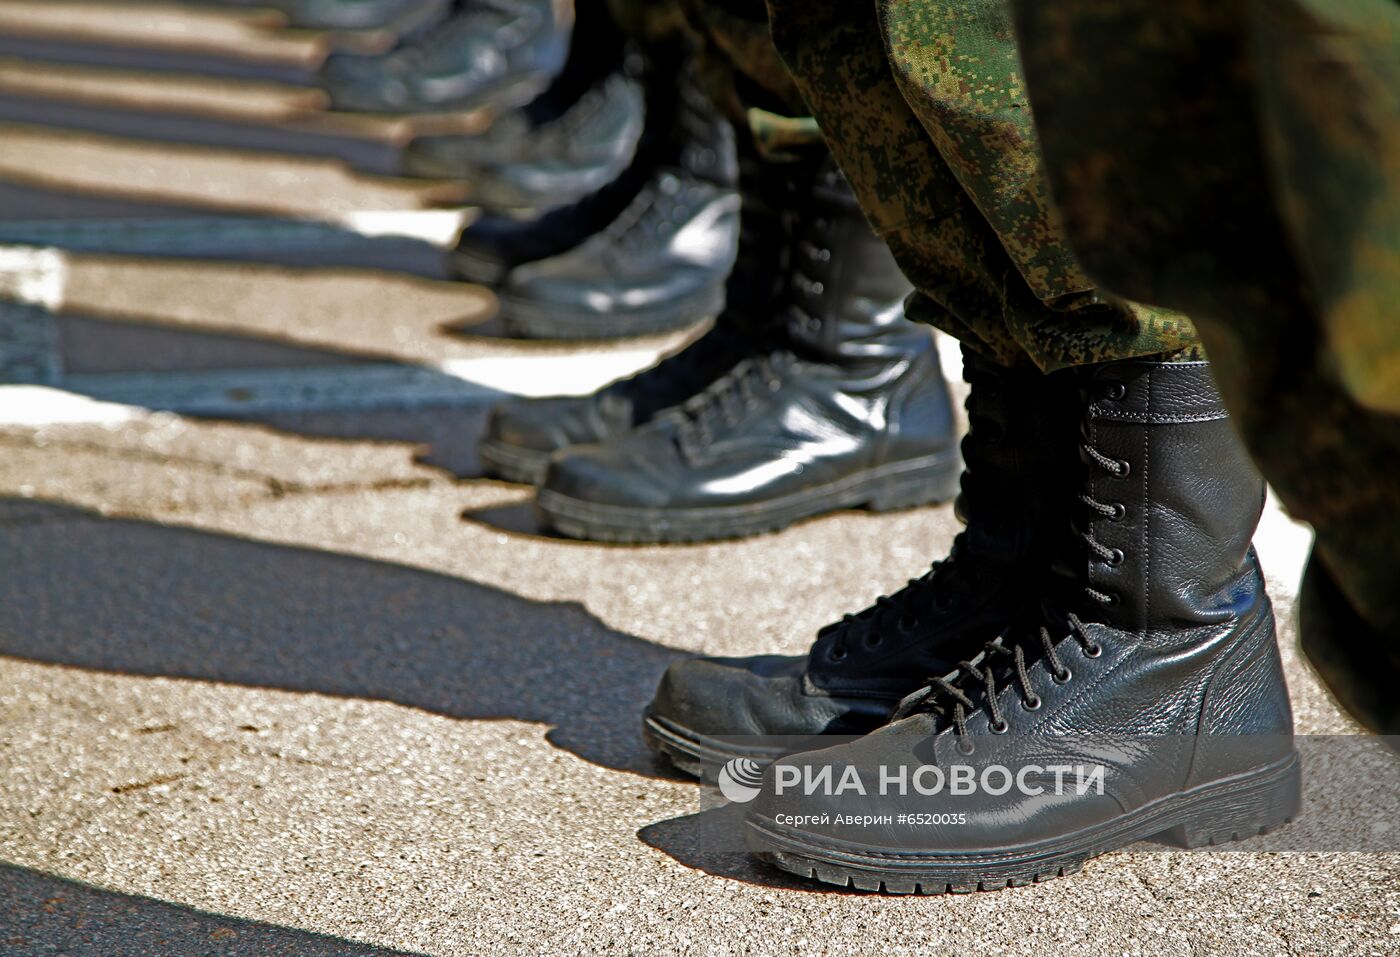 Первые призывники в военном училище в Донецке